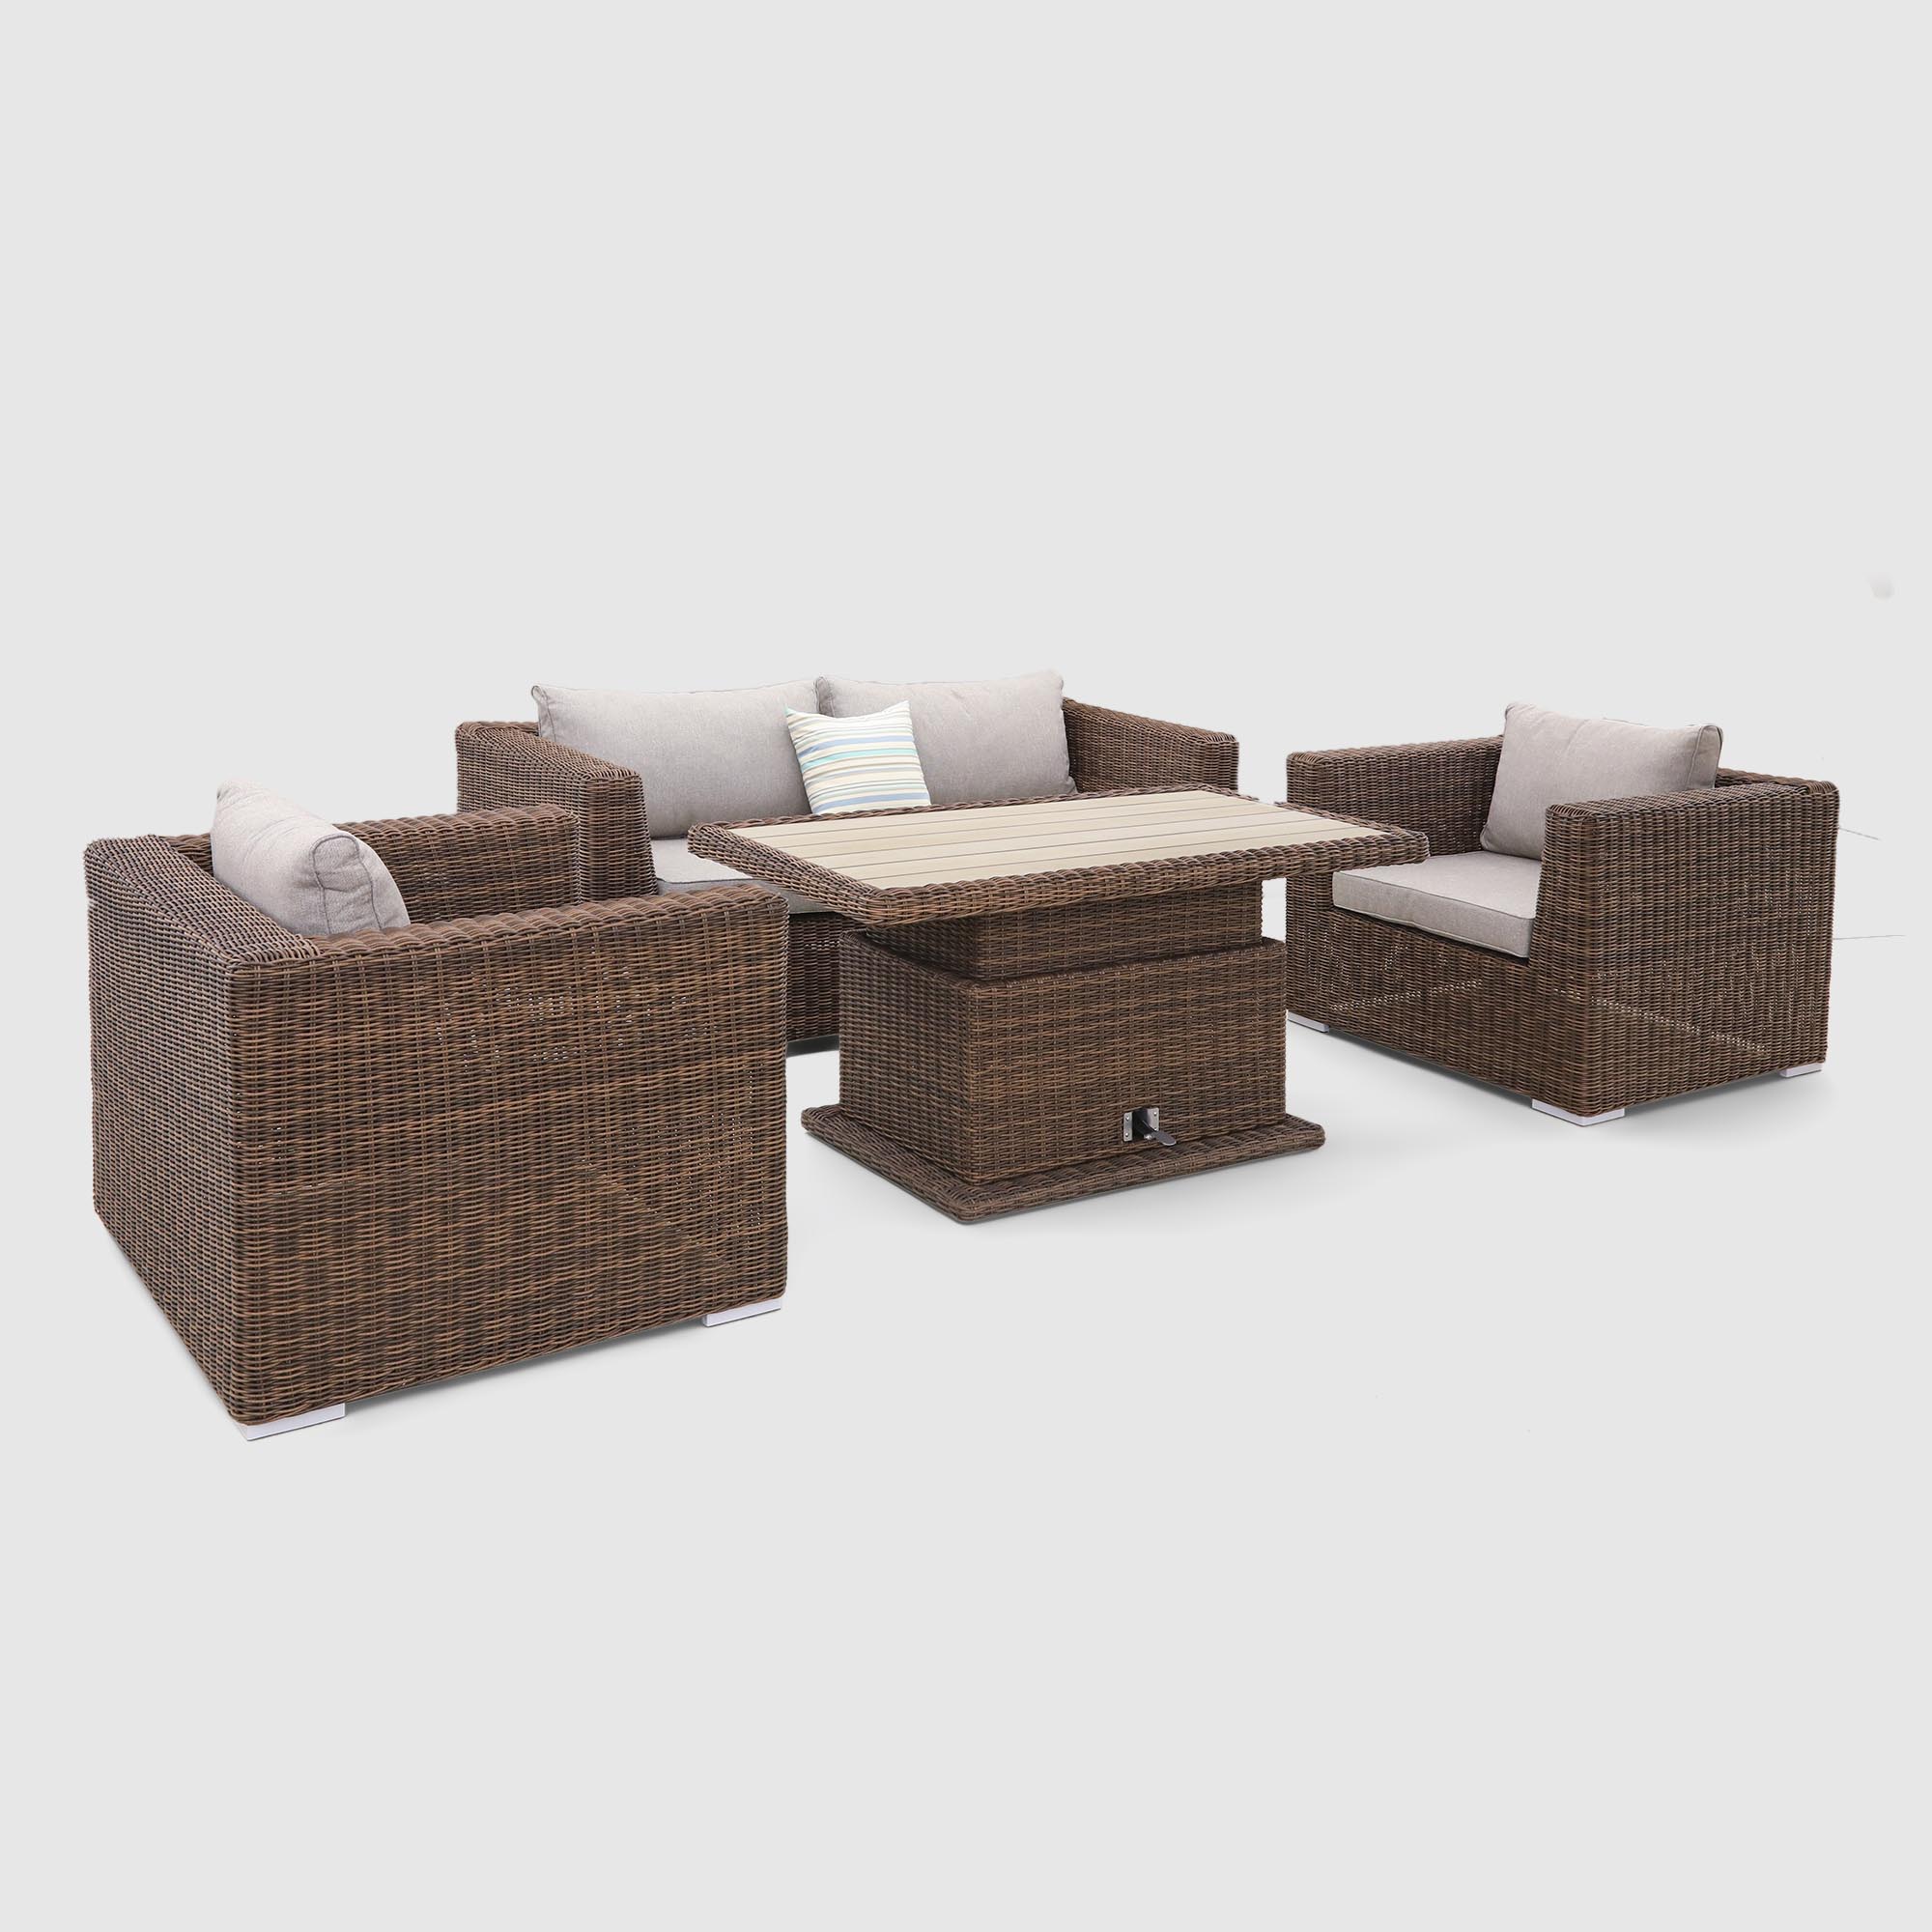 Комплект мебели Yuhang коричневый с серым 4 предмета